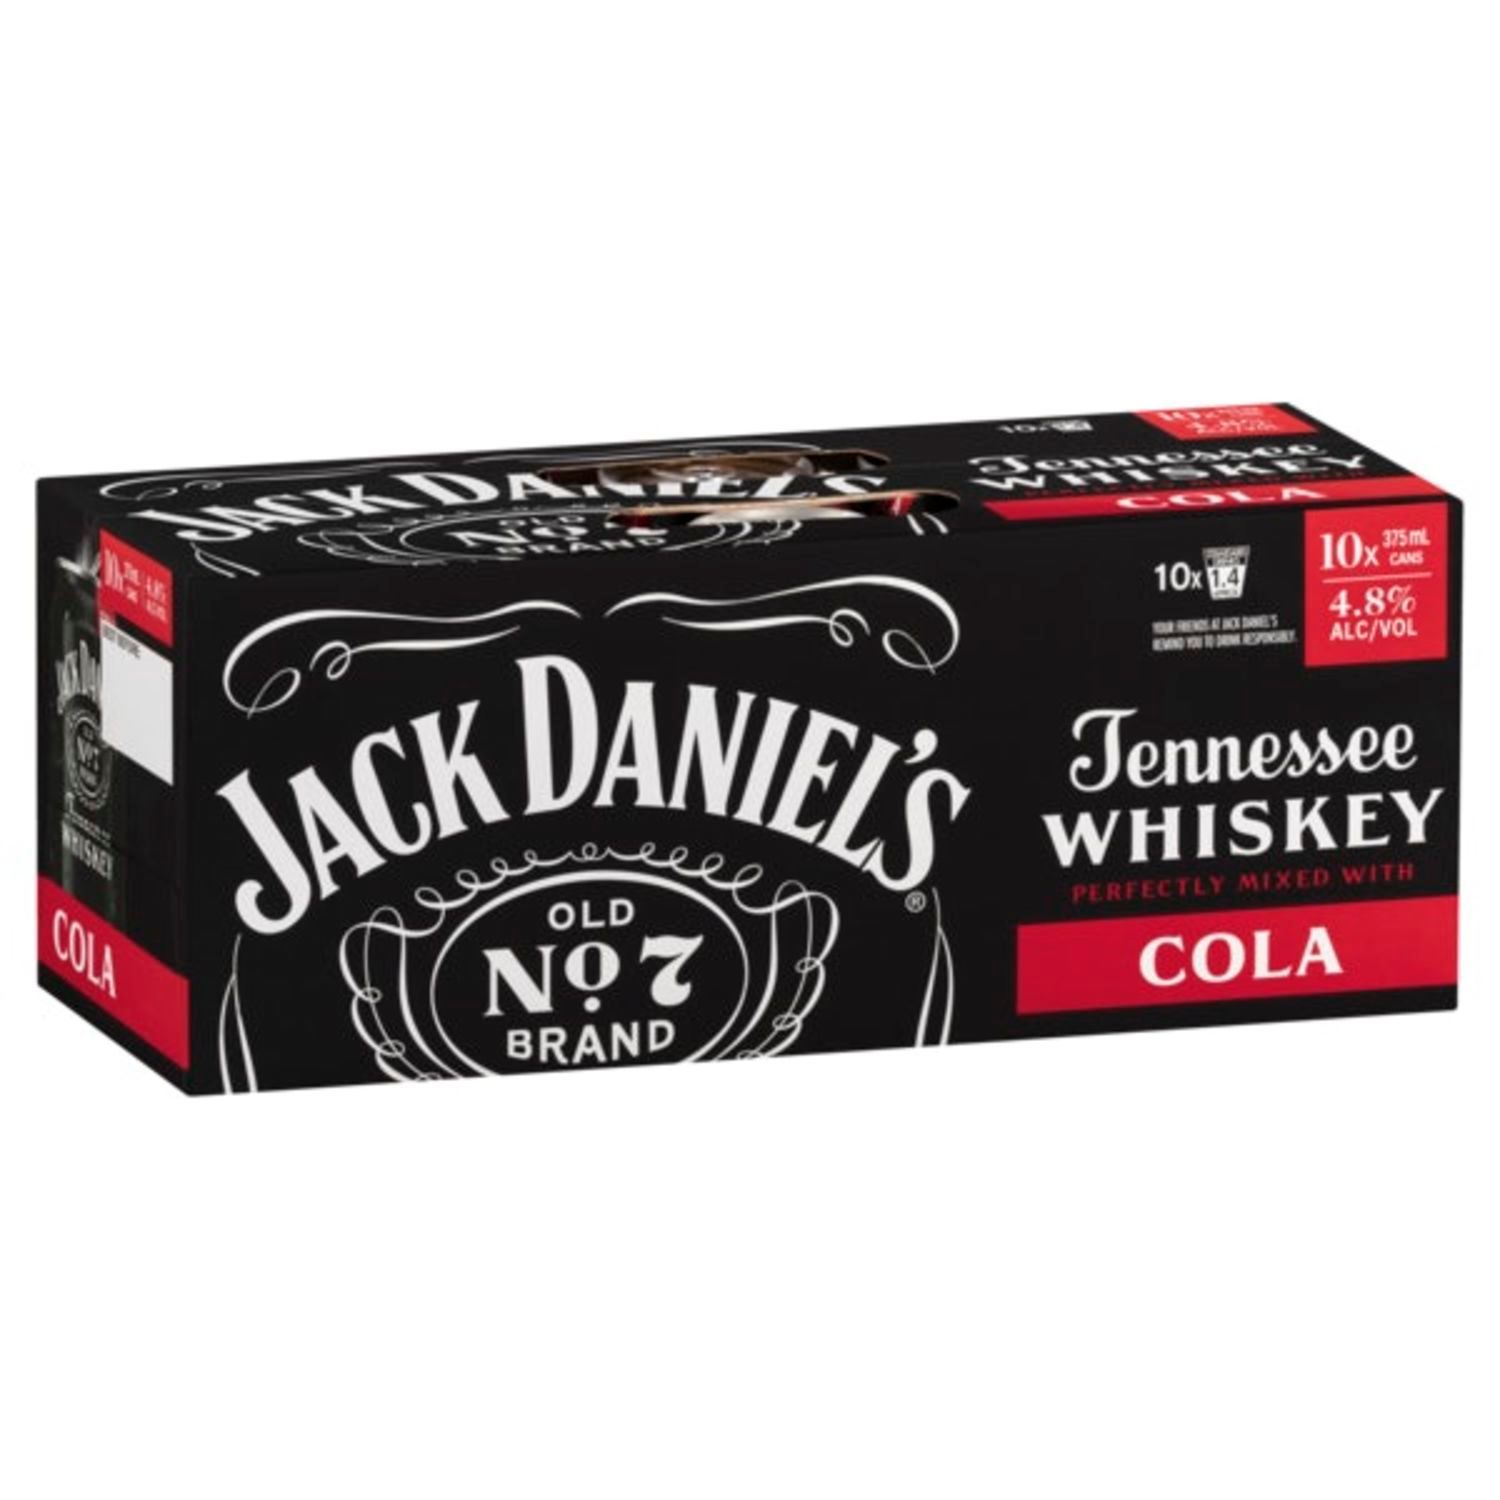 Jack Daniel's & Cola Can 375mL<br /> <br />Alcohol Volume: 4.80%<br /><br />Pack Format: 10 Pack<br /><br />Standard Drinks: 1.4</br /><br />Pack Type: Can<br />